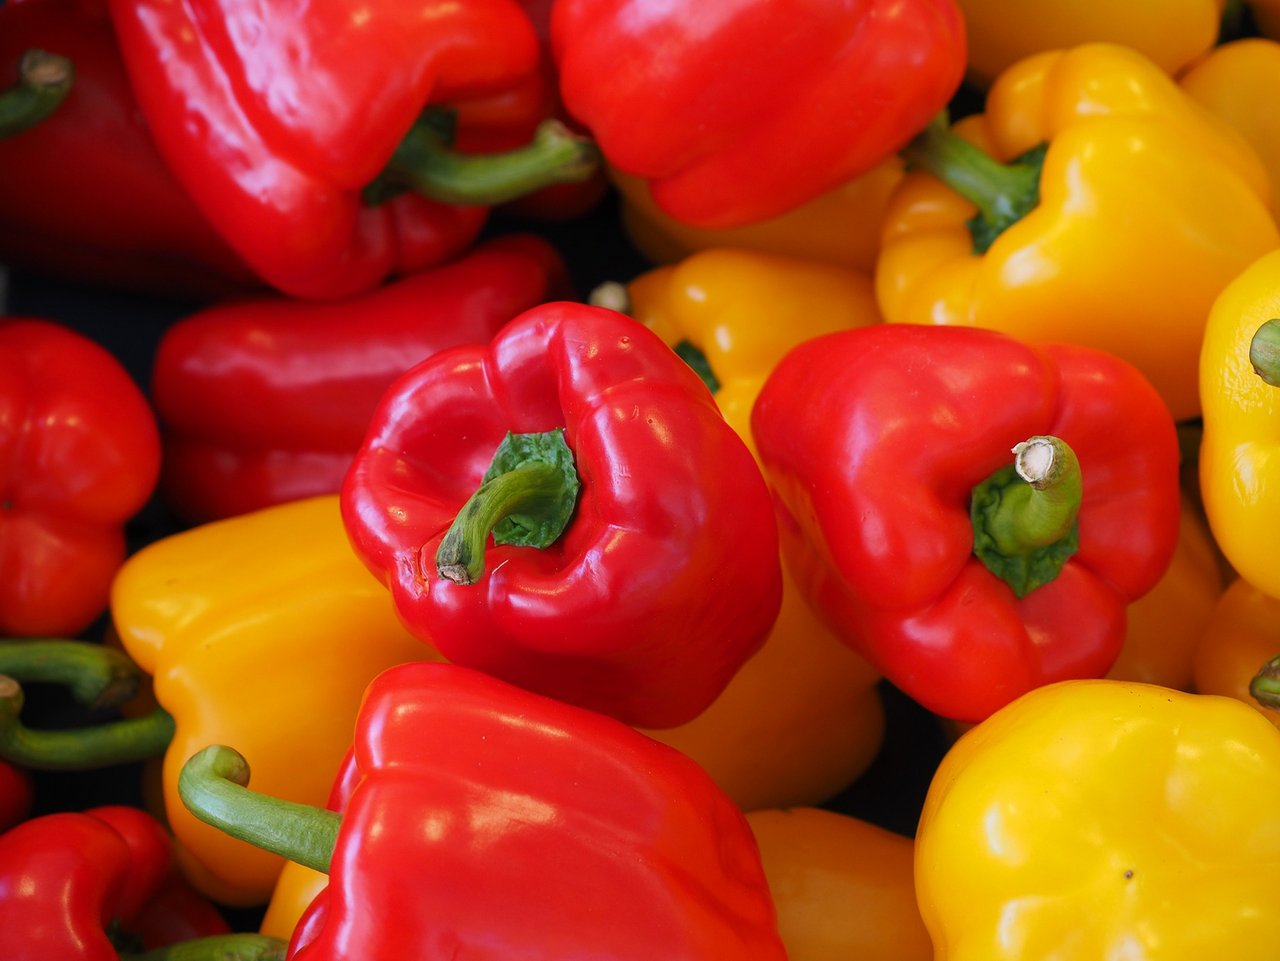 Peperoni, Peperoncini, Paprika, Chili? Die vielen verschiedenen Namen für das farbenfrohe Gemüse stiften oft Verwirrung. (Bild pd)